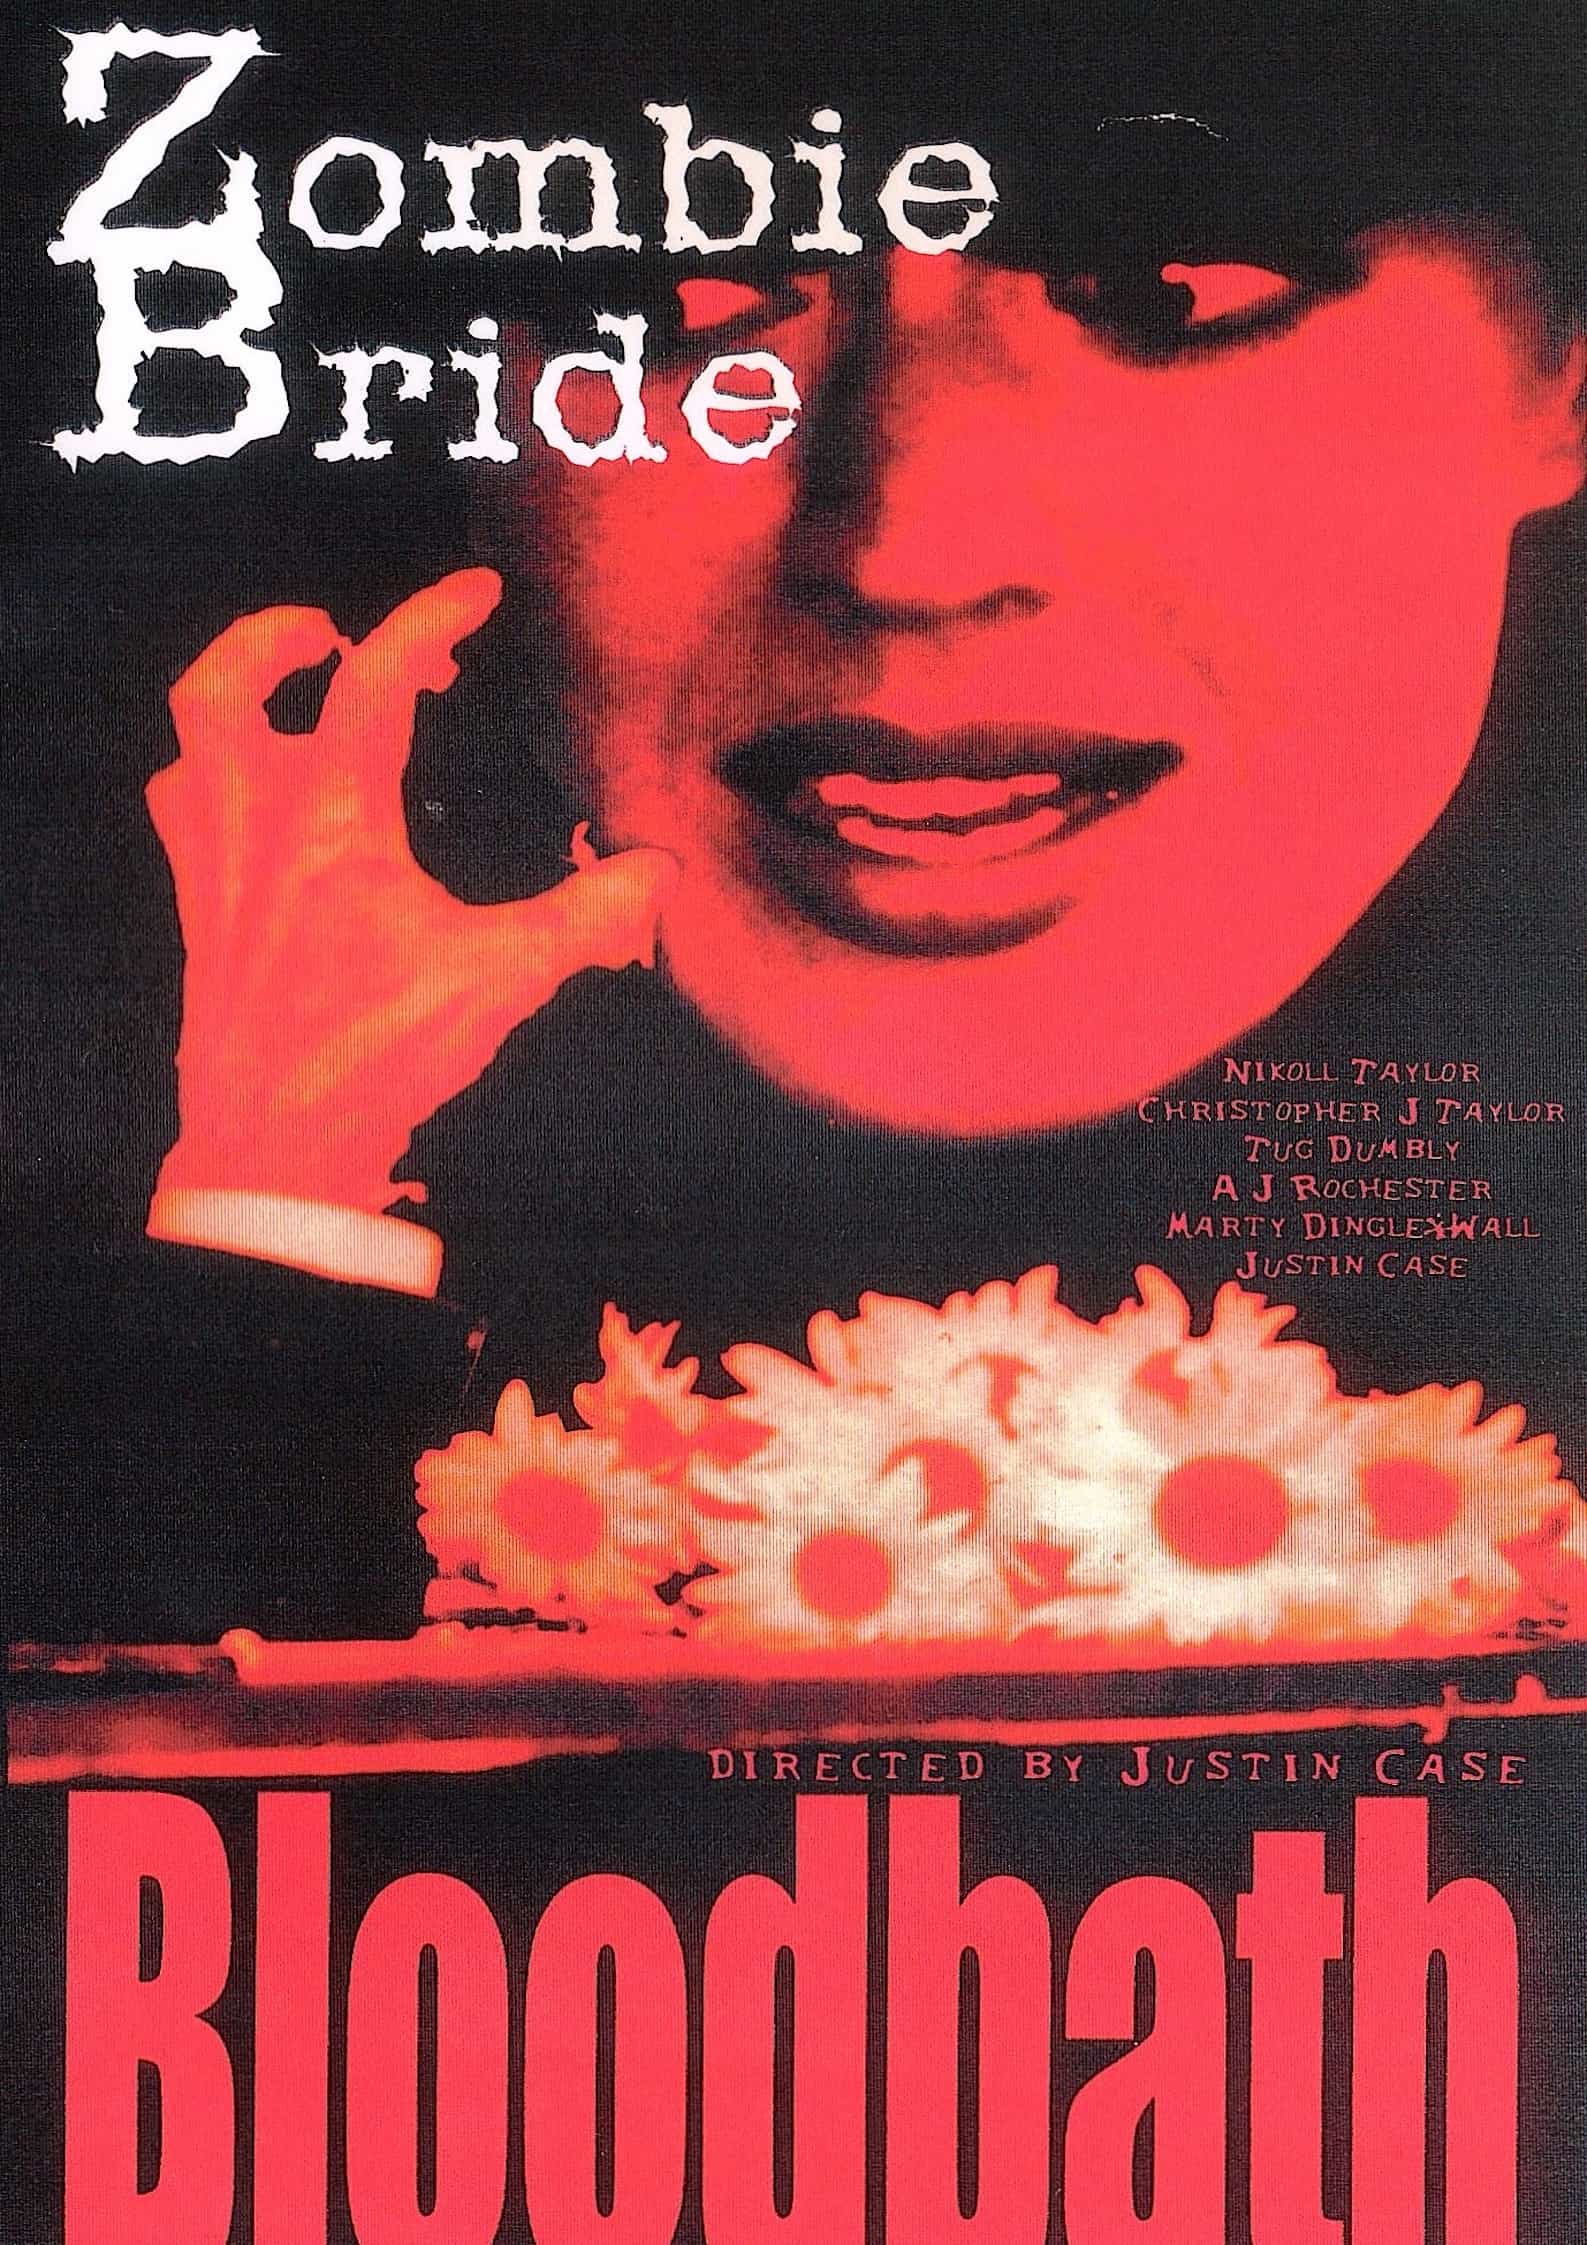 Zombie Bride Bloodbath